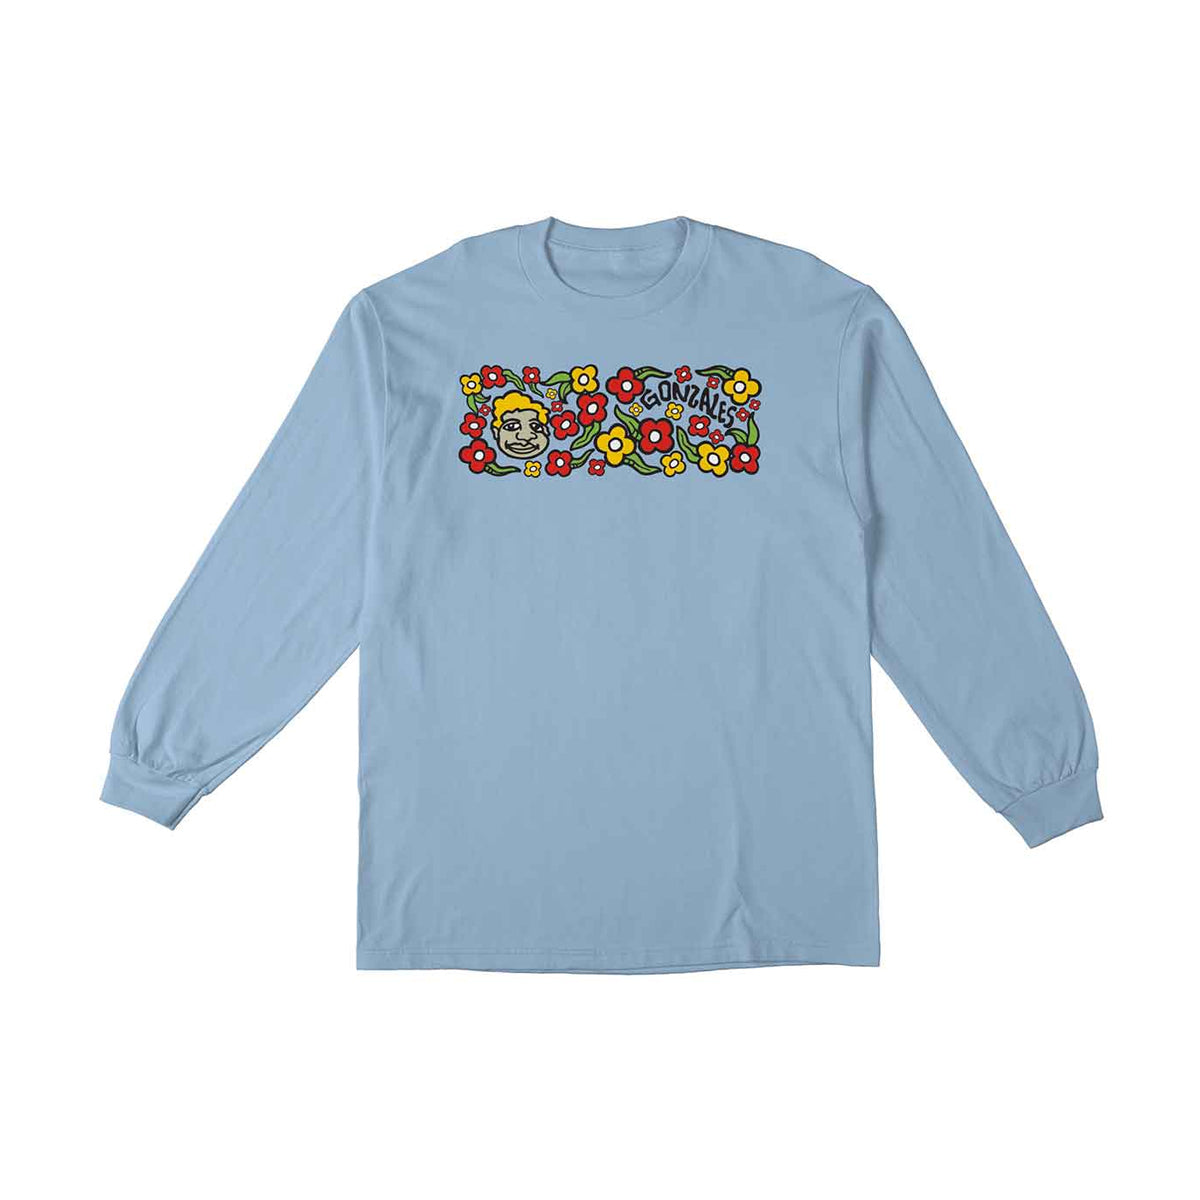 Krooked Gonz Long Sleeve T-Shirt (Light Blue) - Apple Valley Emporium